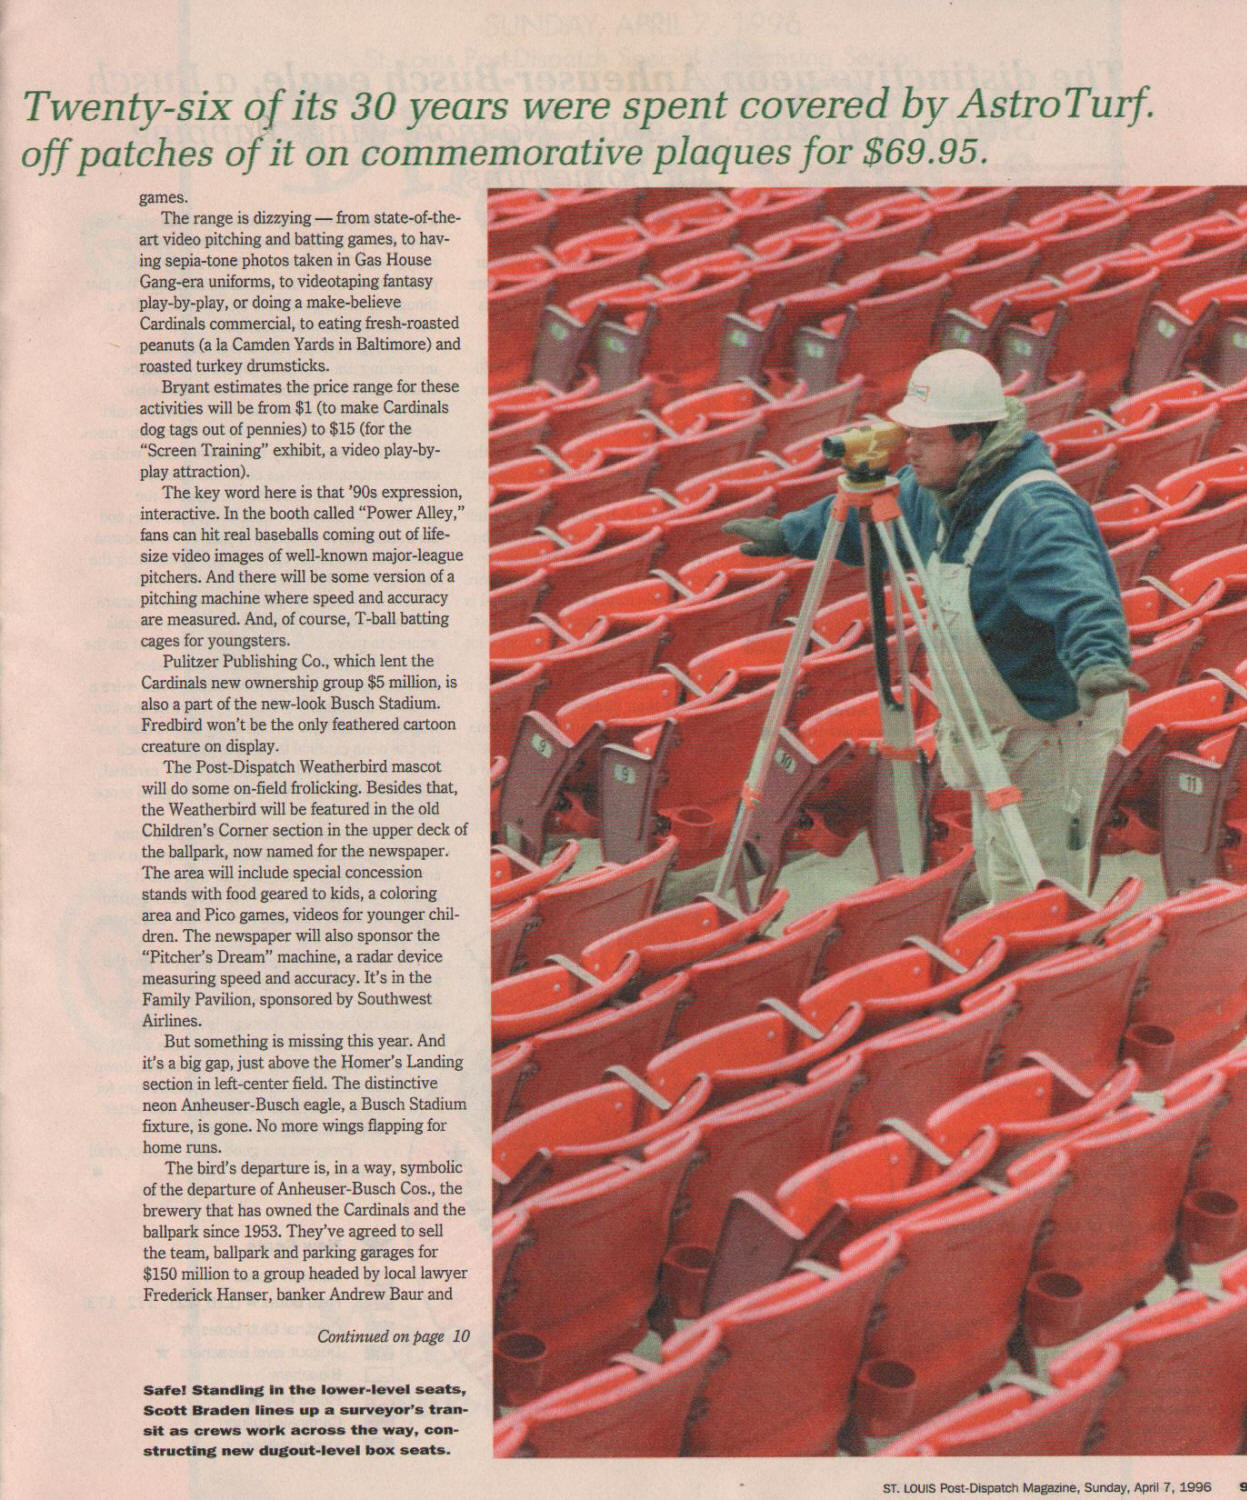 1996 St. Louis Post Dispatch Magazine (4/7) pg 5